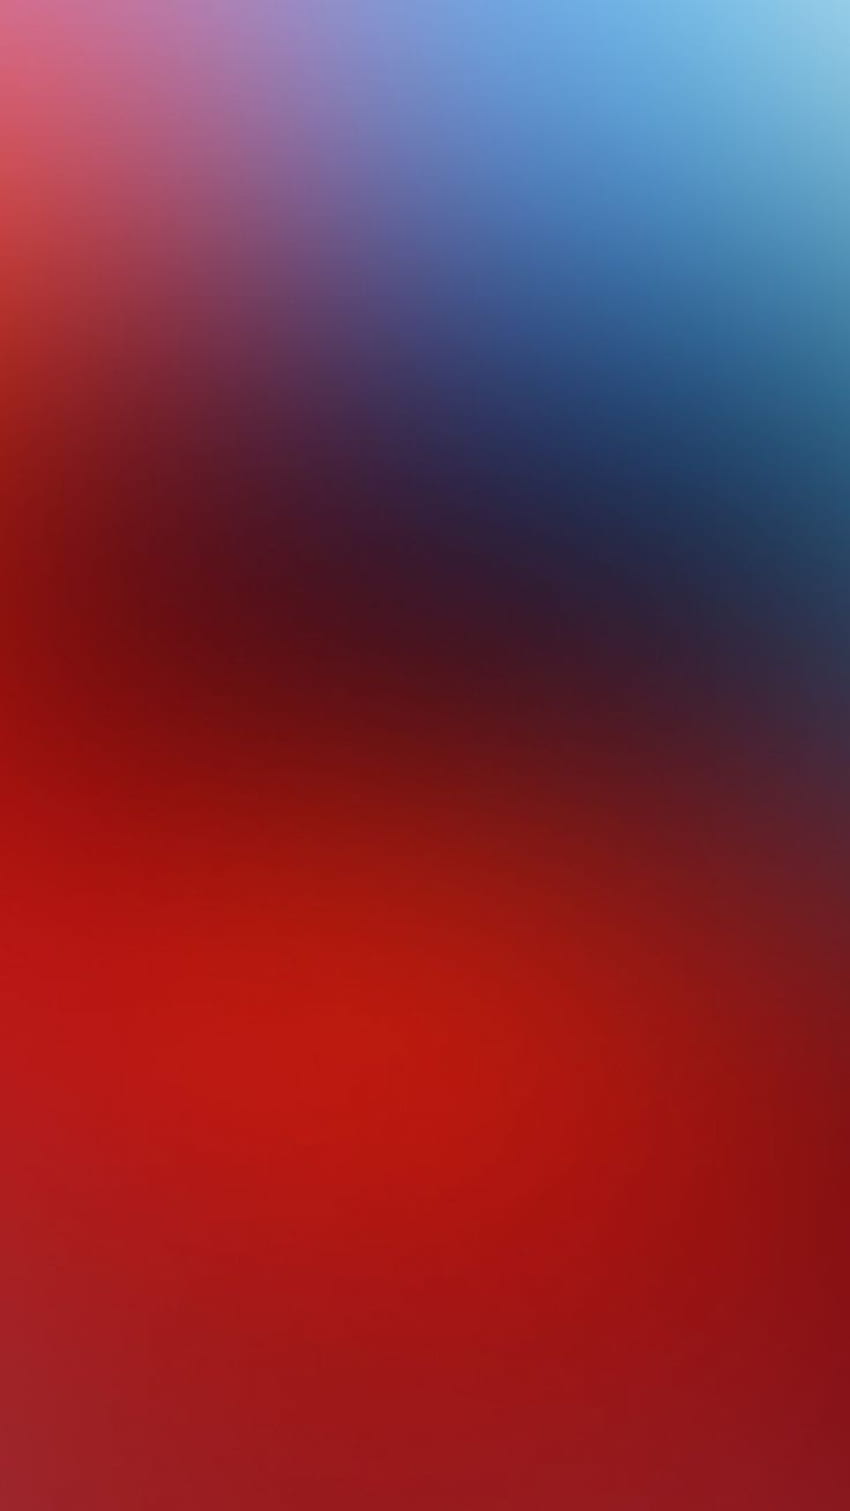 Teléfono rojo y azul estético. azul, iphone Ombre, violeta claro, rojo y negro Ombre fondo de pantalla del teléfono